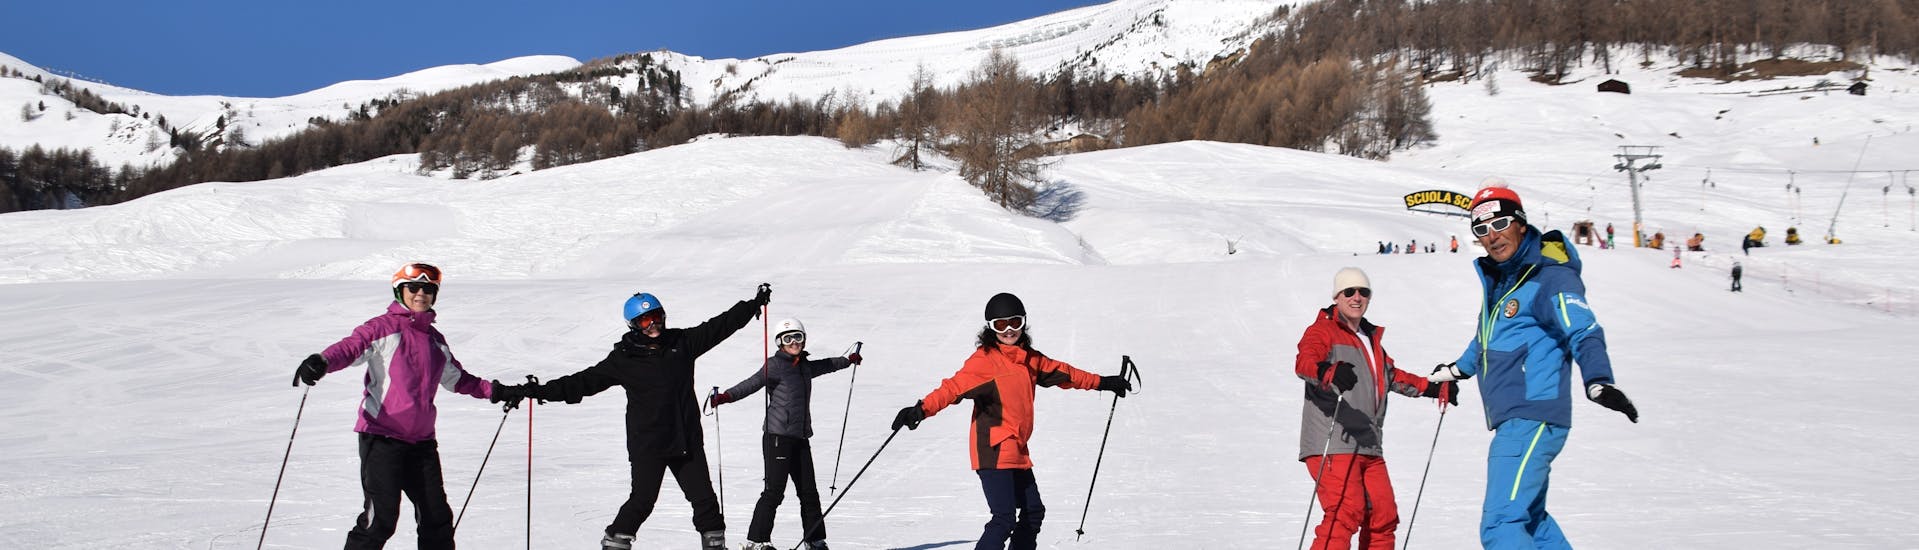 Une famille passant sa journée sur la neige ensemble à Livigno pendant un des cours particuliers de ski pour familles et amis.